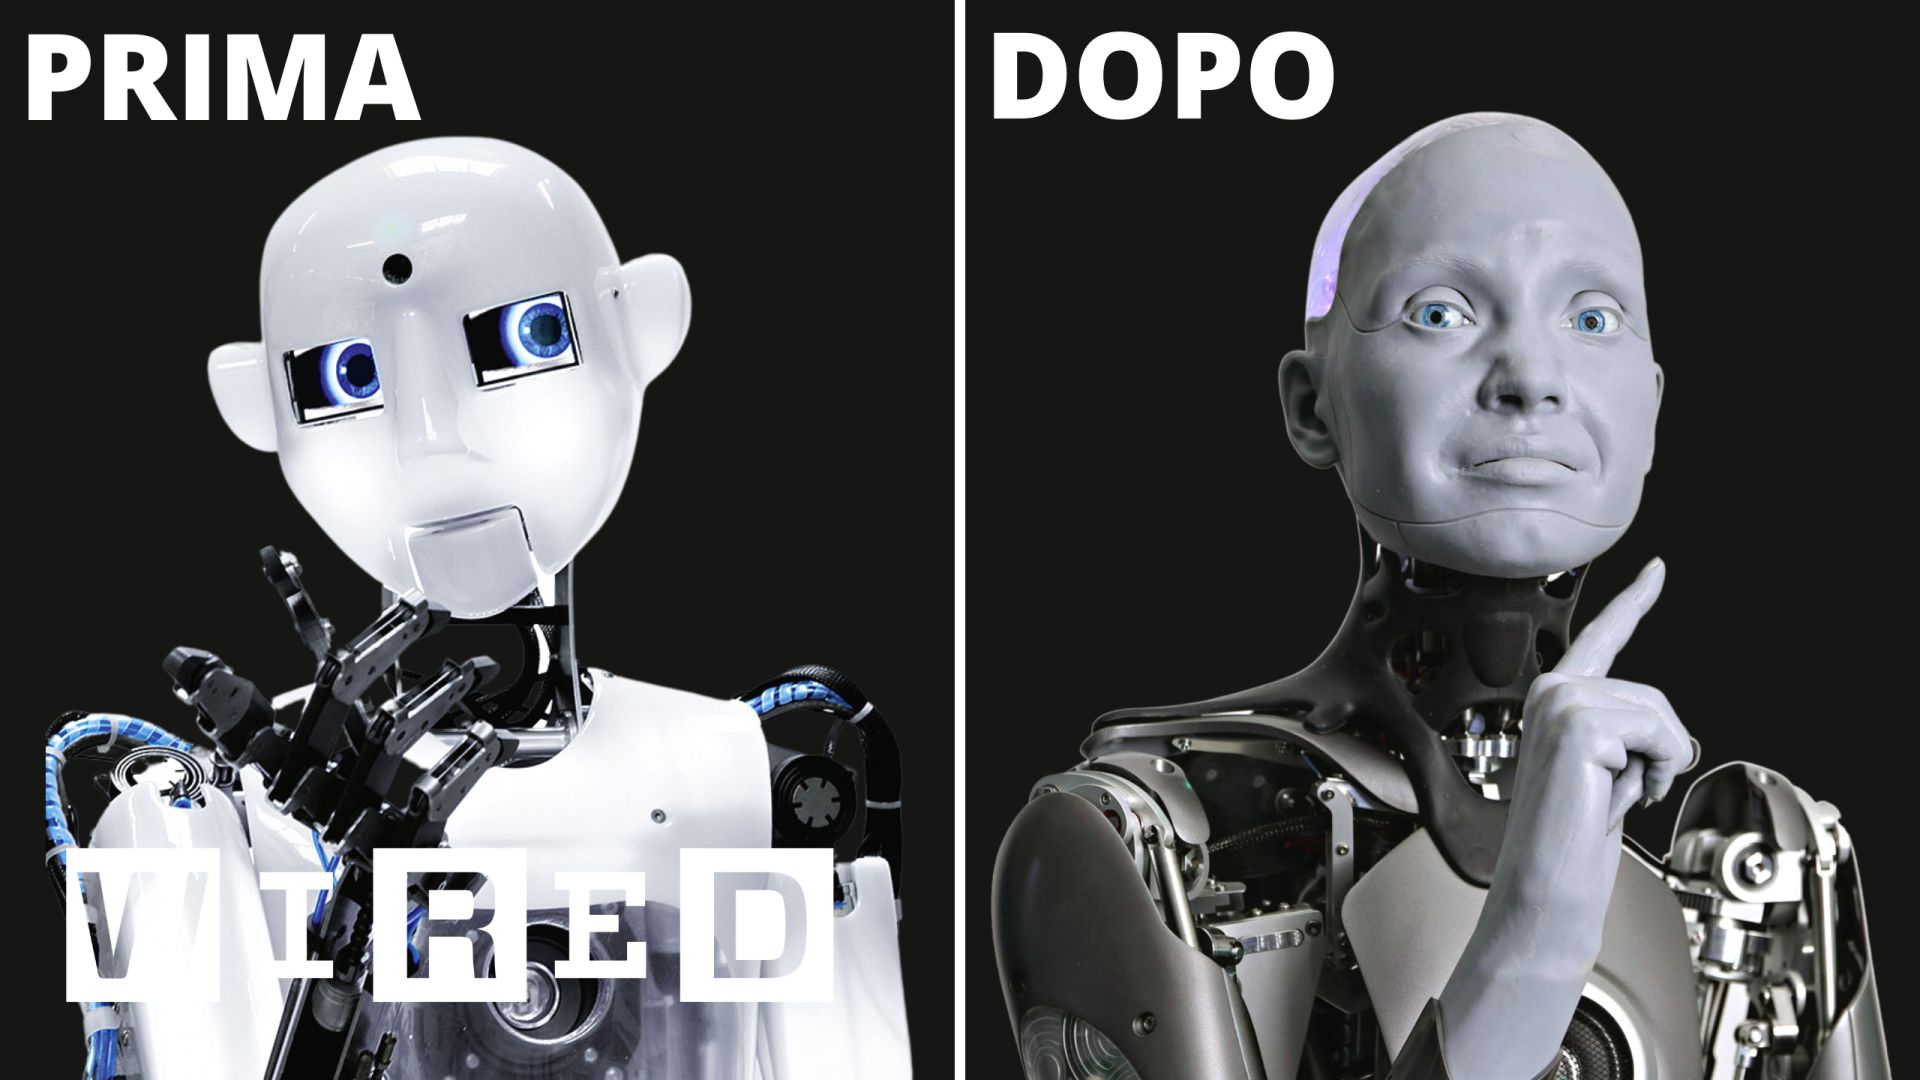 Watch Tutti i prototipi per realizzare un robot umanoide